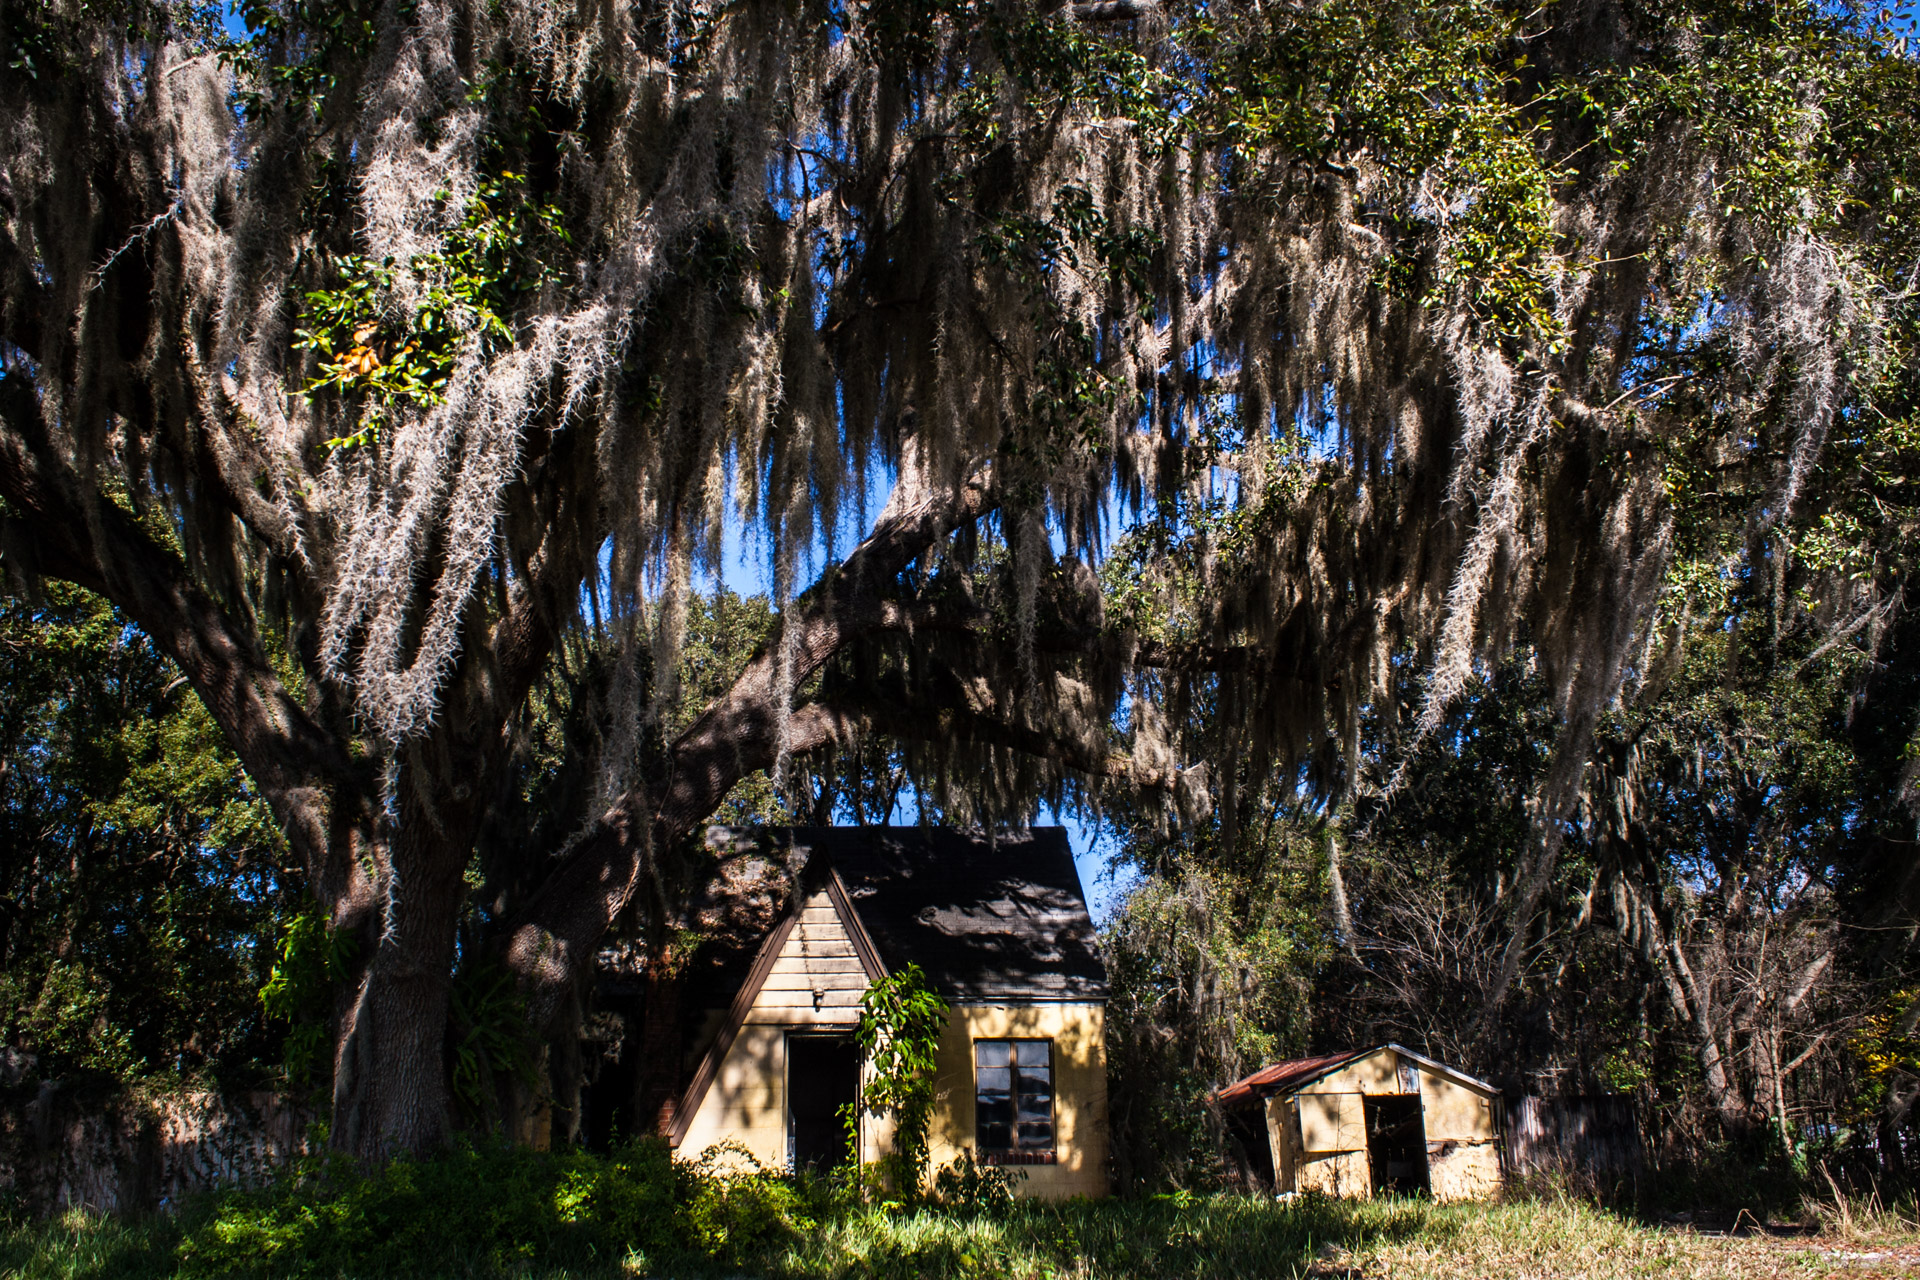 Leesburg, Florida - Wispy Tree House